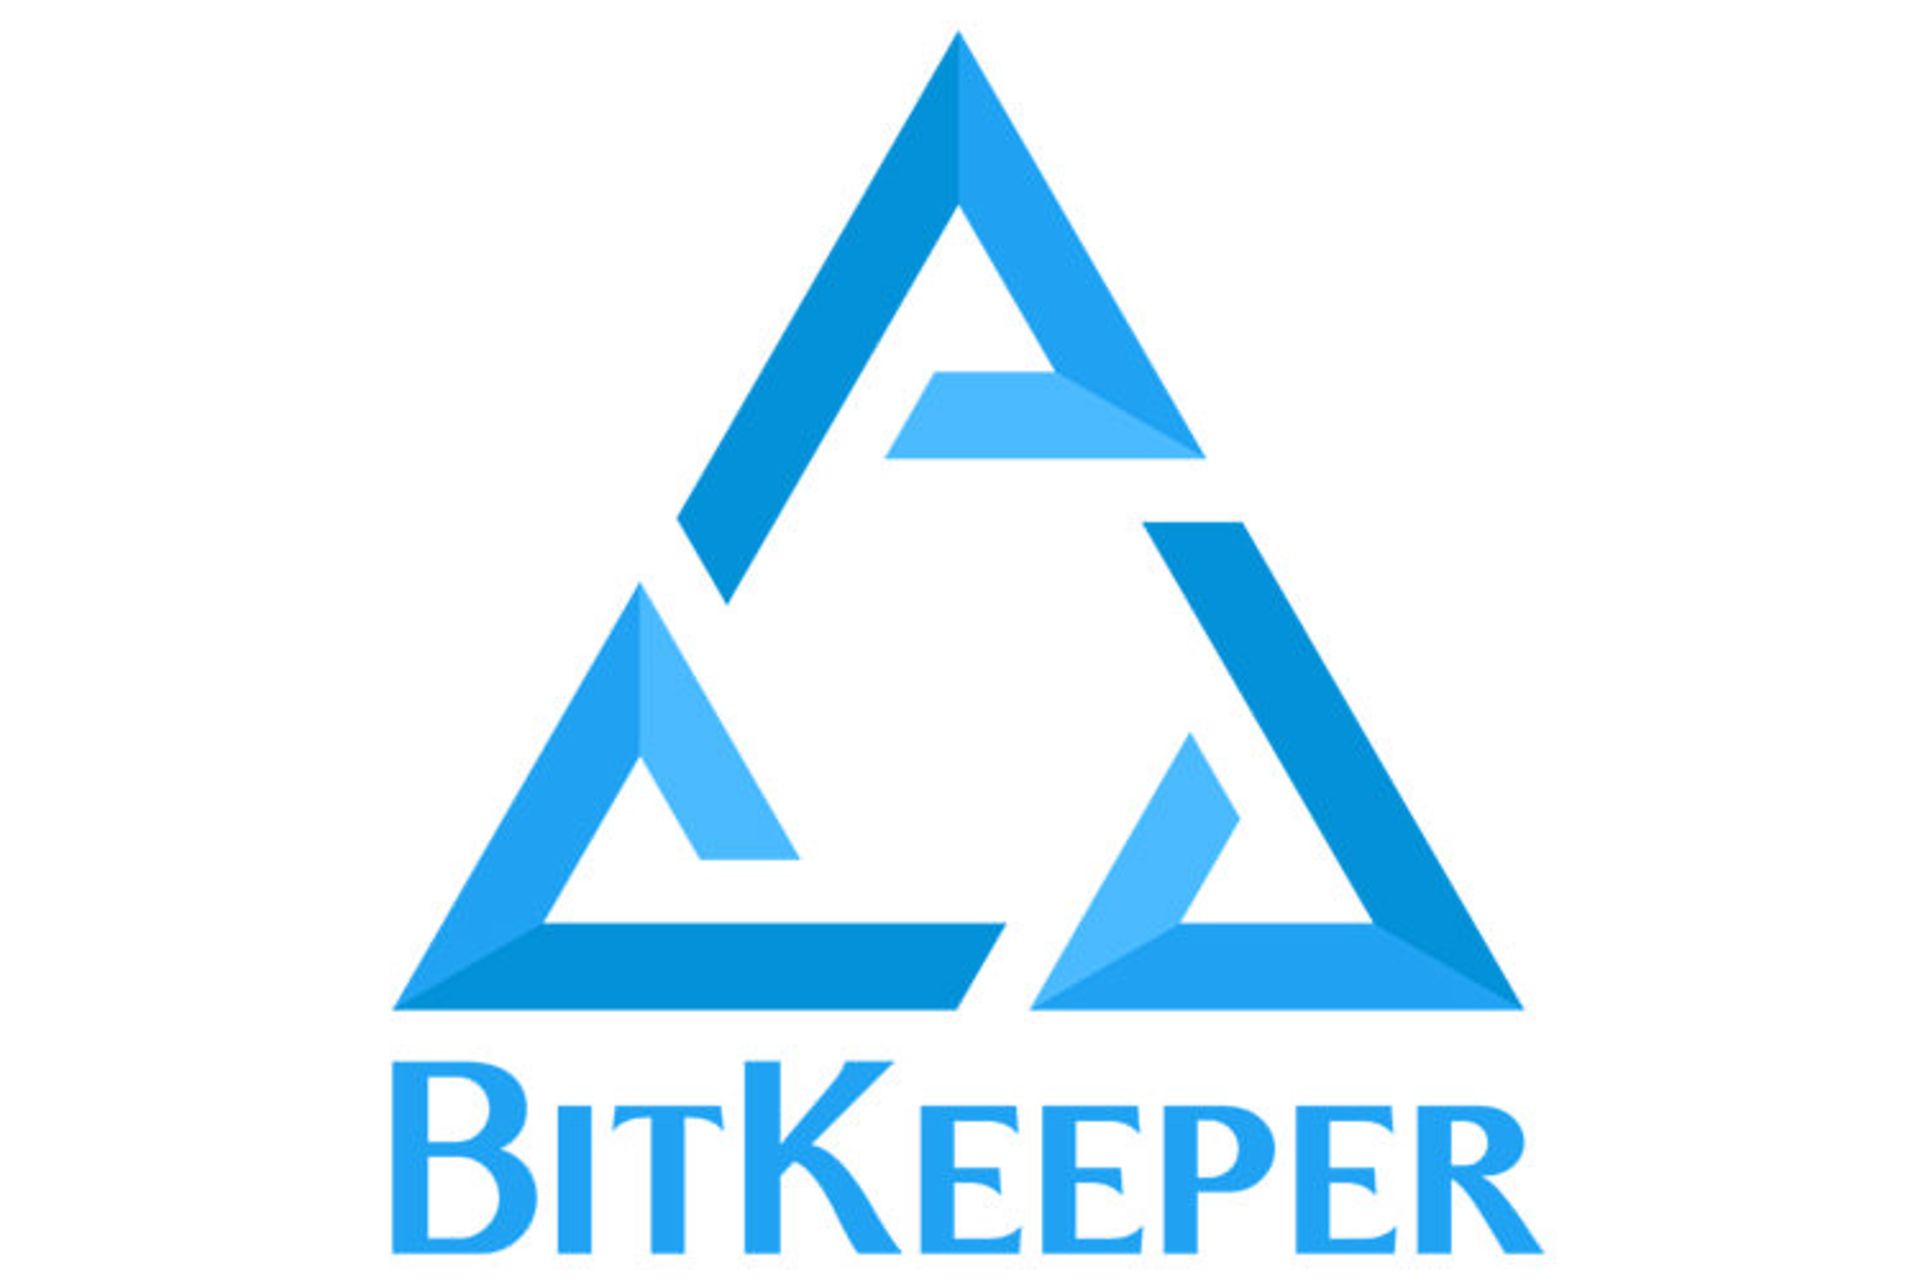 بیت کیپر / BitKeeper